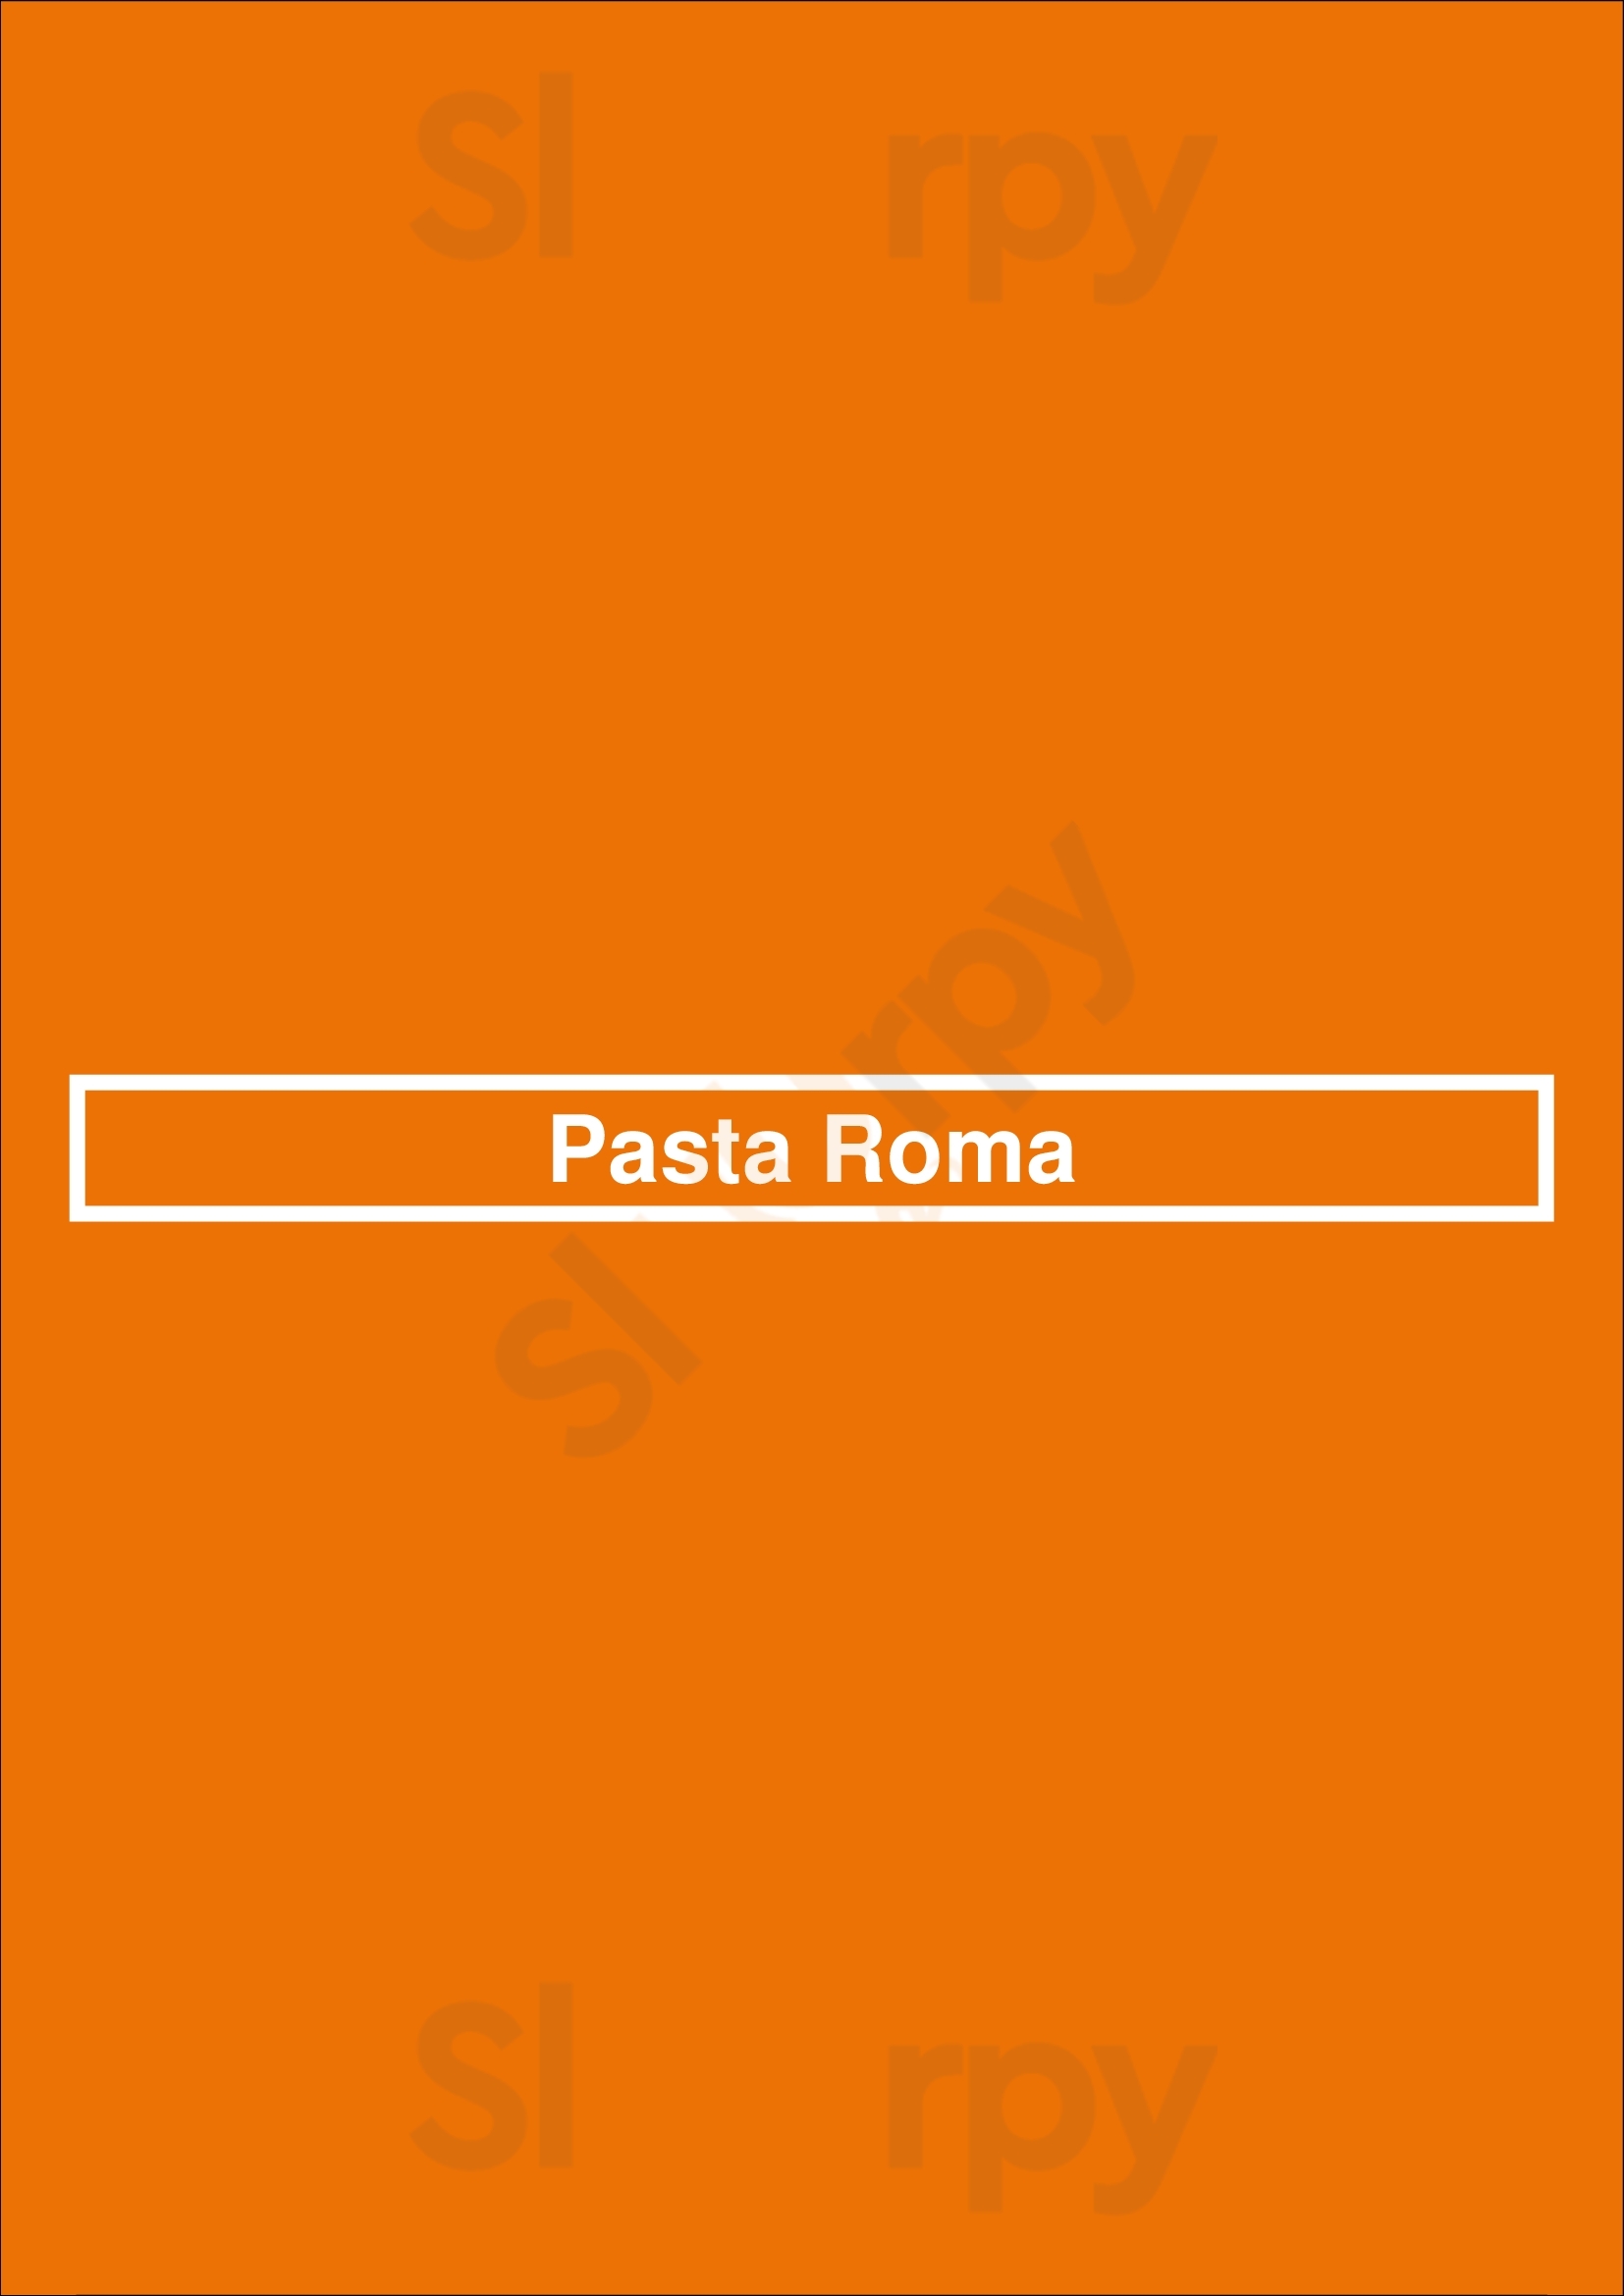 Pasta Roma Los Angeles Menu - 1